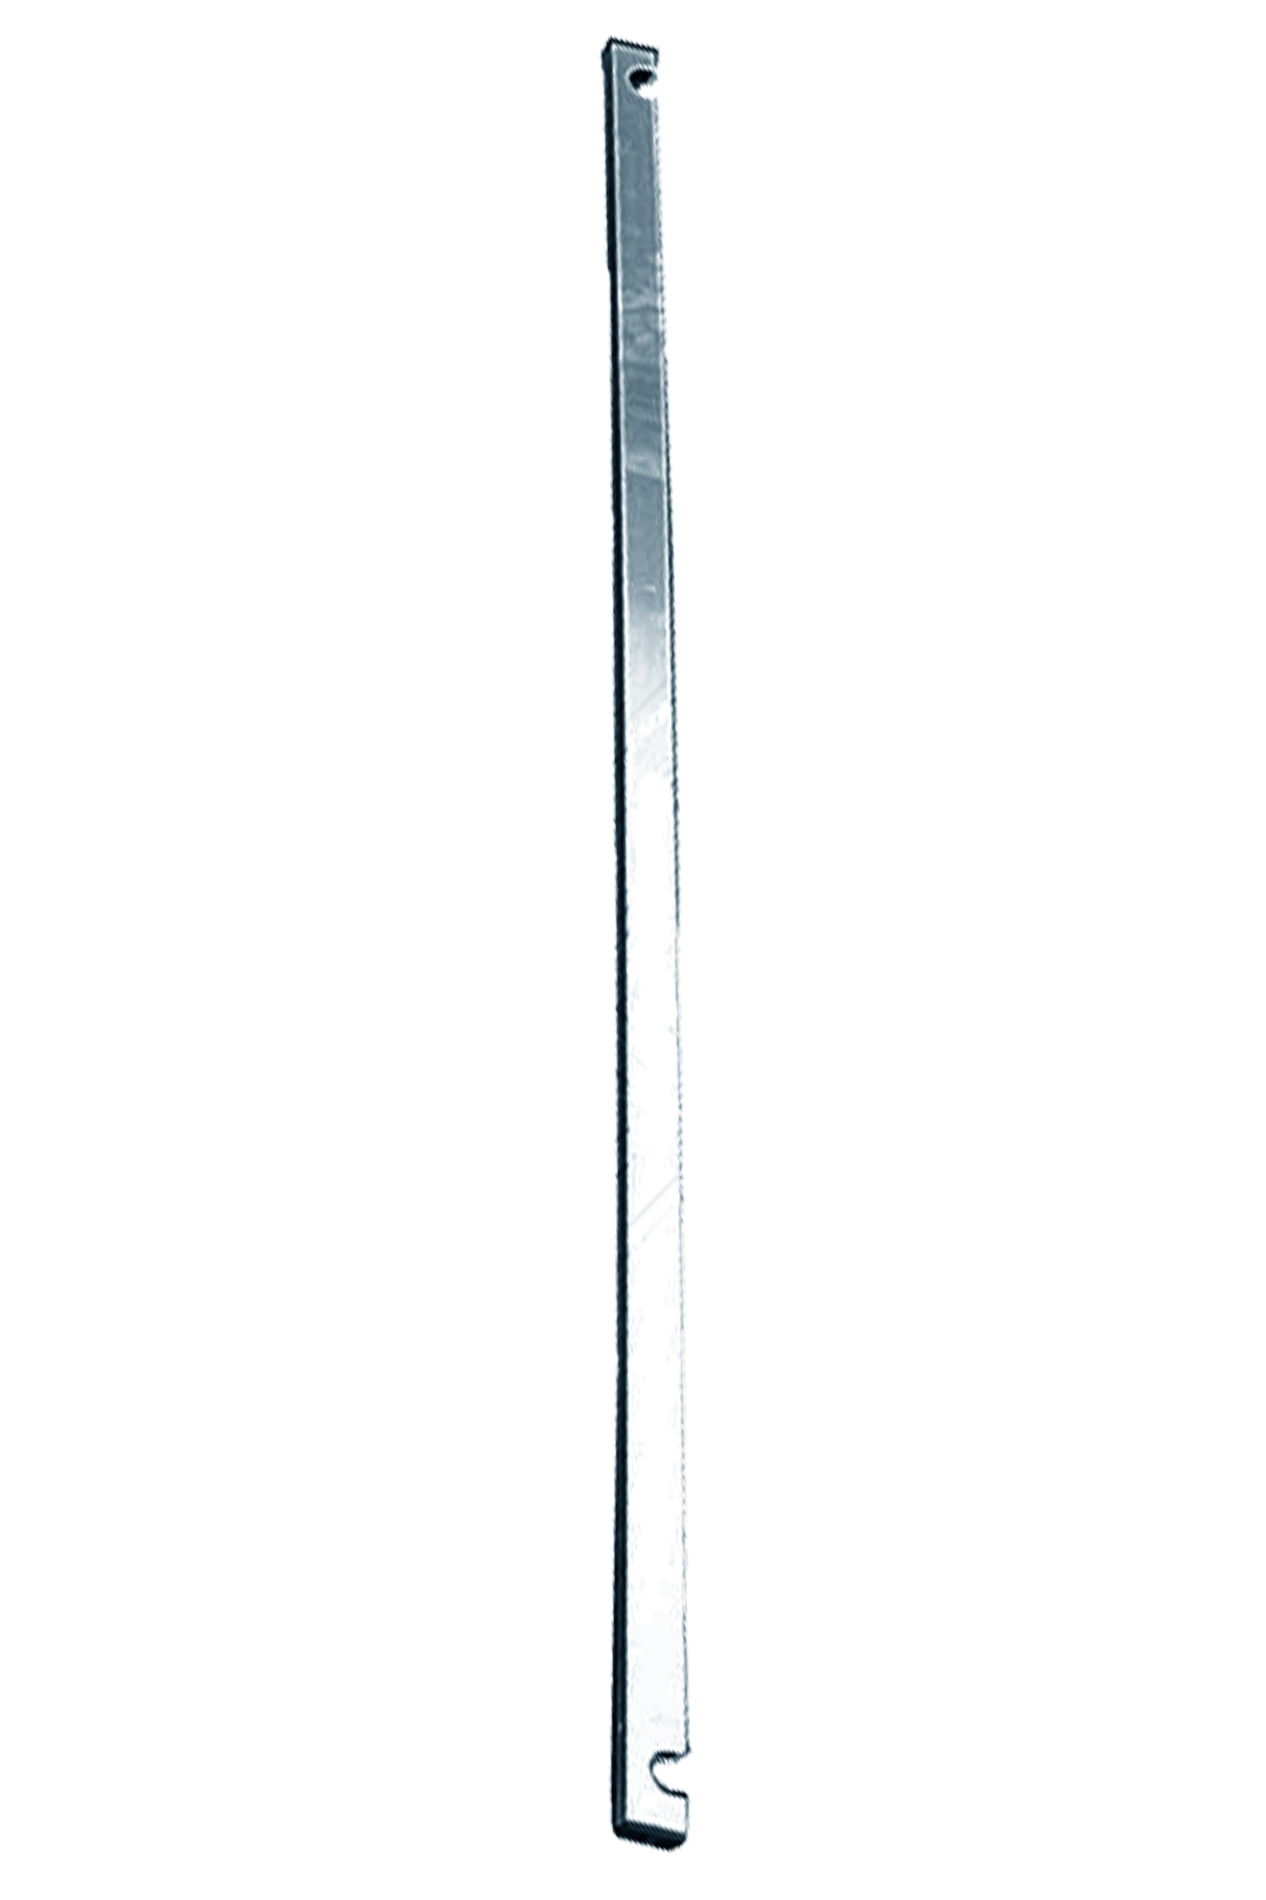 Дополнительное изображение STABILO 100-2 Передвижные подмости, рабочая высота 12,3 м, размер площадки (2.0x0.75 м)